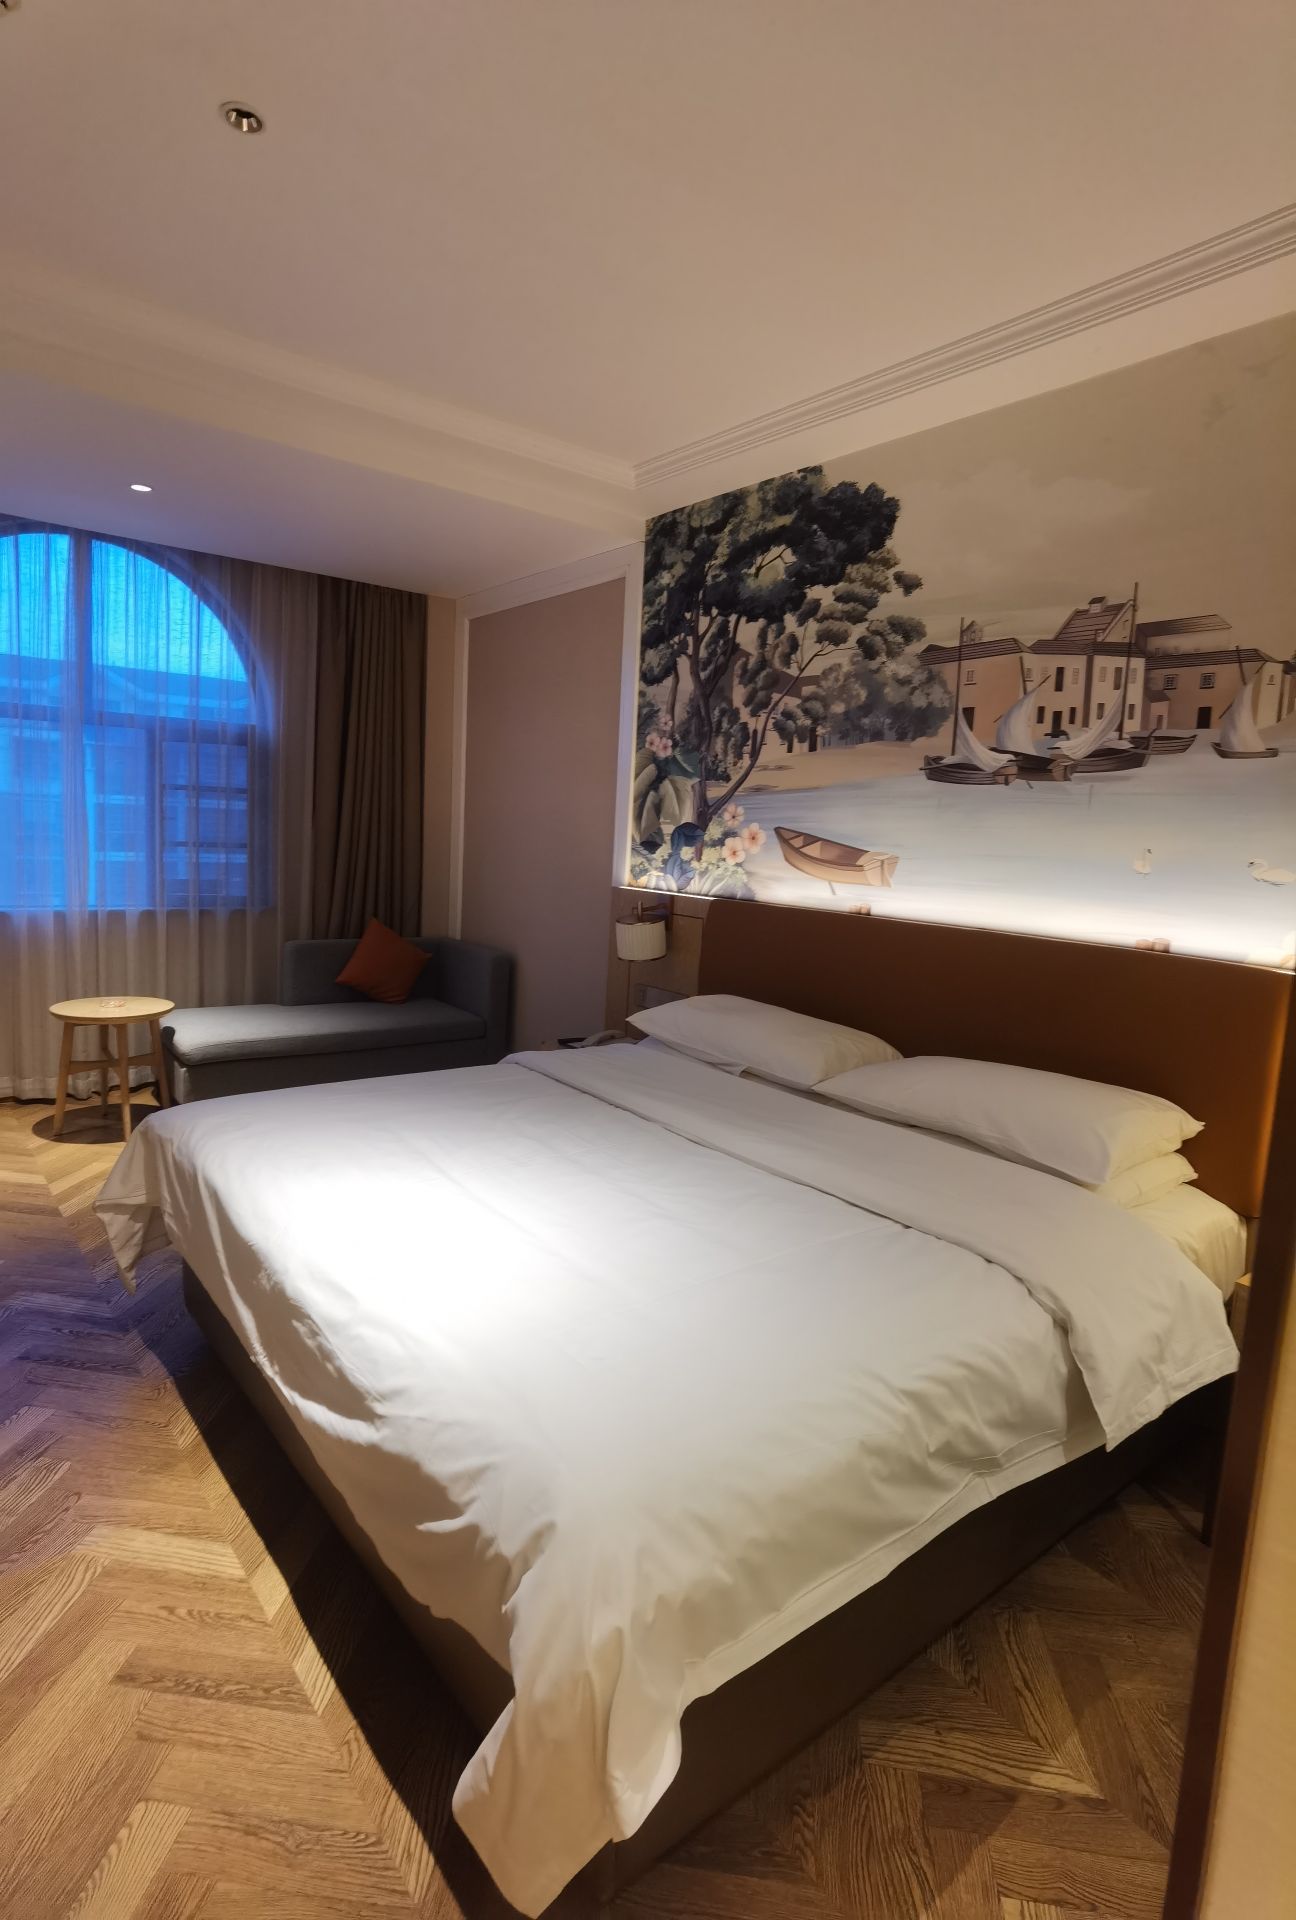 洪湖爱国路维也纳酒店房间面积足够大，床品睡起来很舒服，房间设施布局合理，室内干净卫生，工作人员服务热